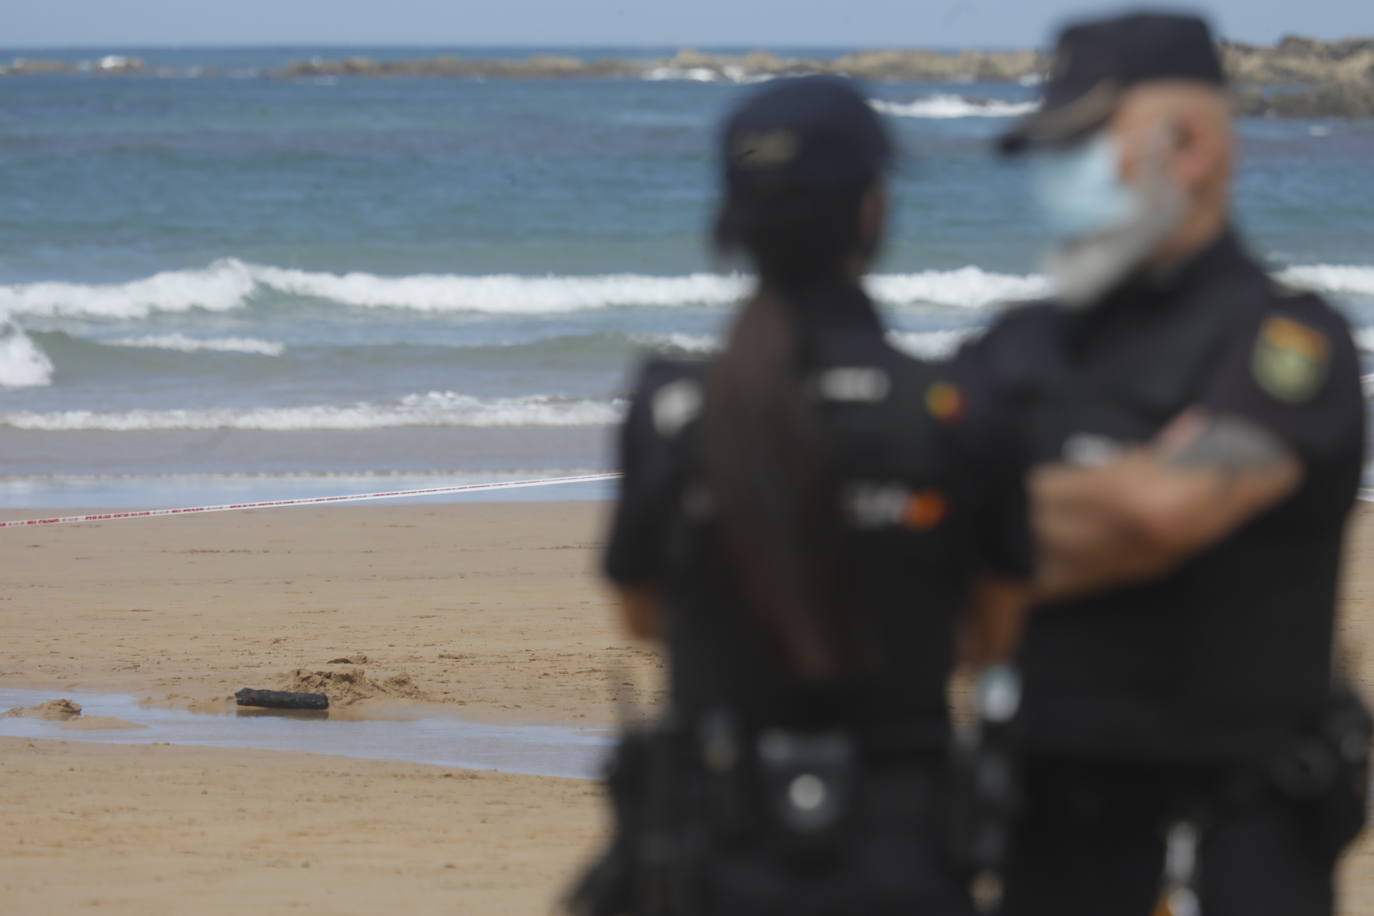 Los Tedax se llevaron una pieza metálica hallada en el arenal ante la posibilidad de que formara parte de un obús y la Policía acordonó cerca de dos horas parte de la playa gijonesa. Finalmente se trata de una bengala de submarino.